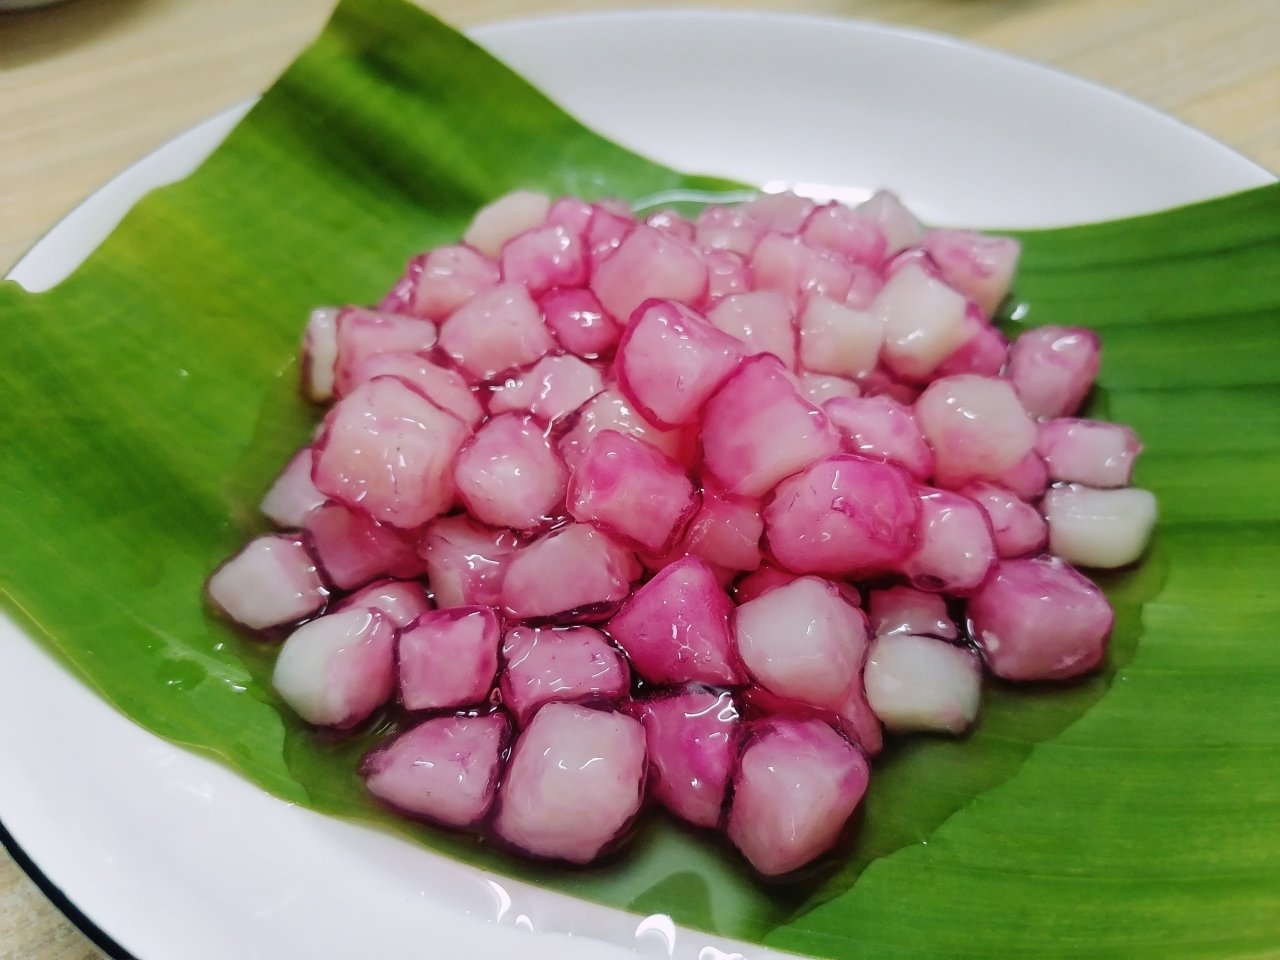 夏日甜品—泰式椰浆红宝石，马蹄（荸荠）的别样吃法